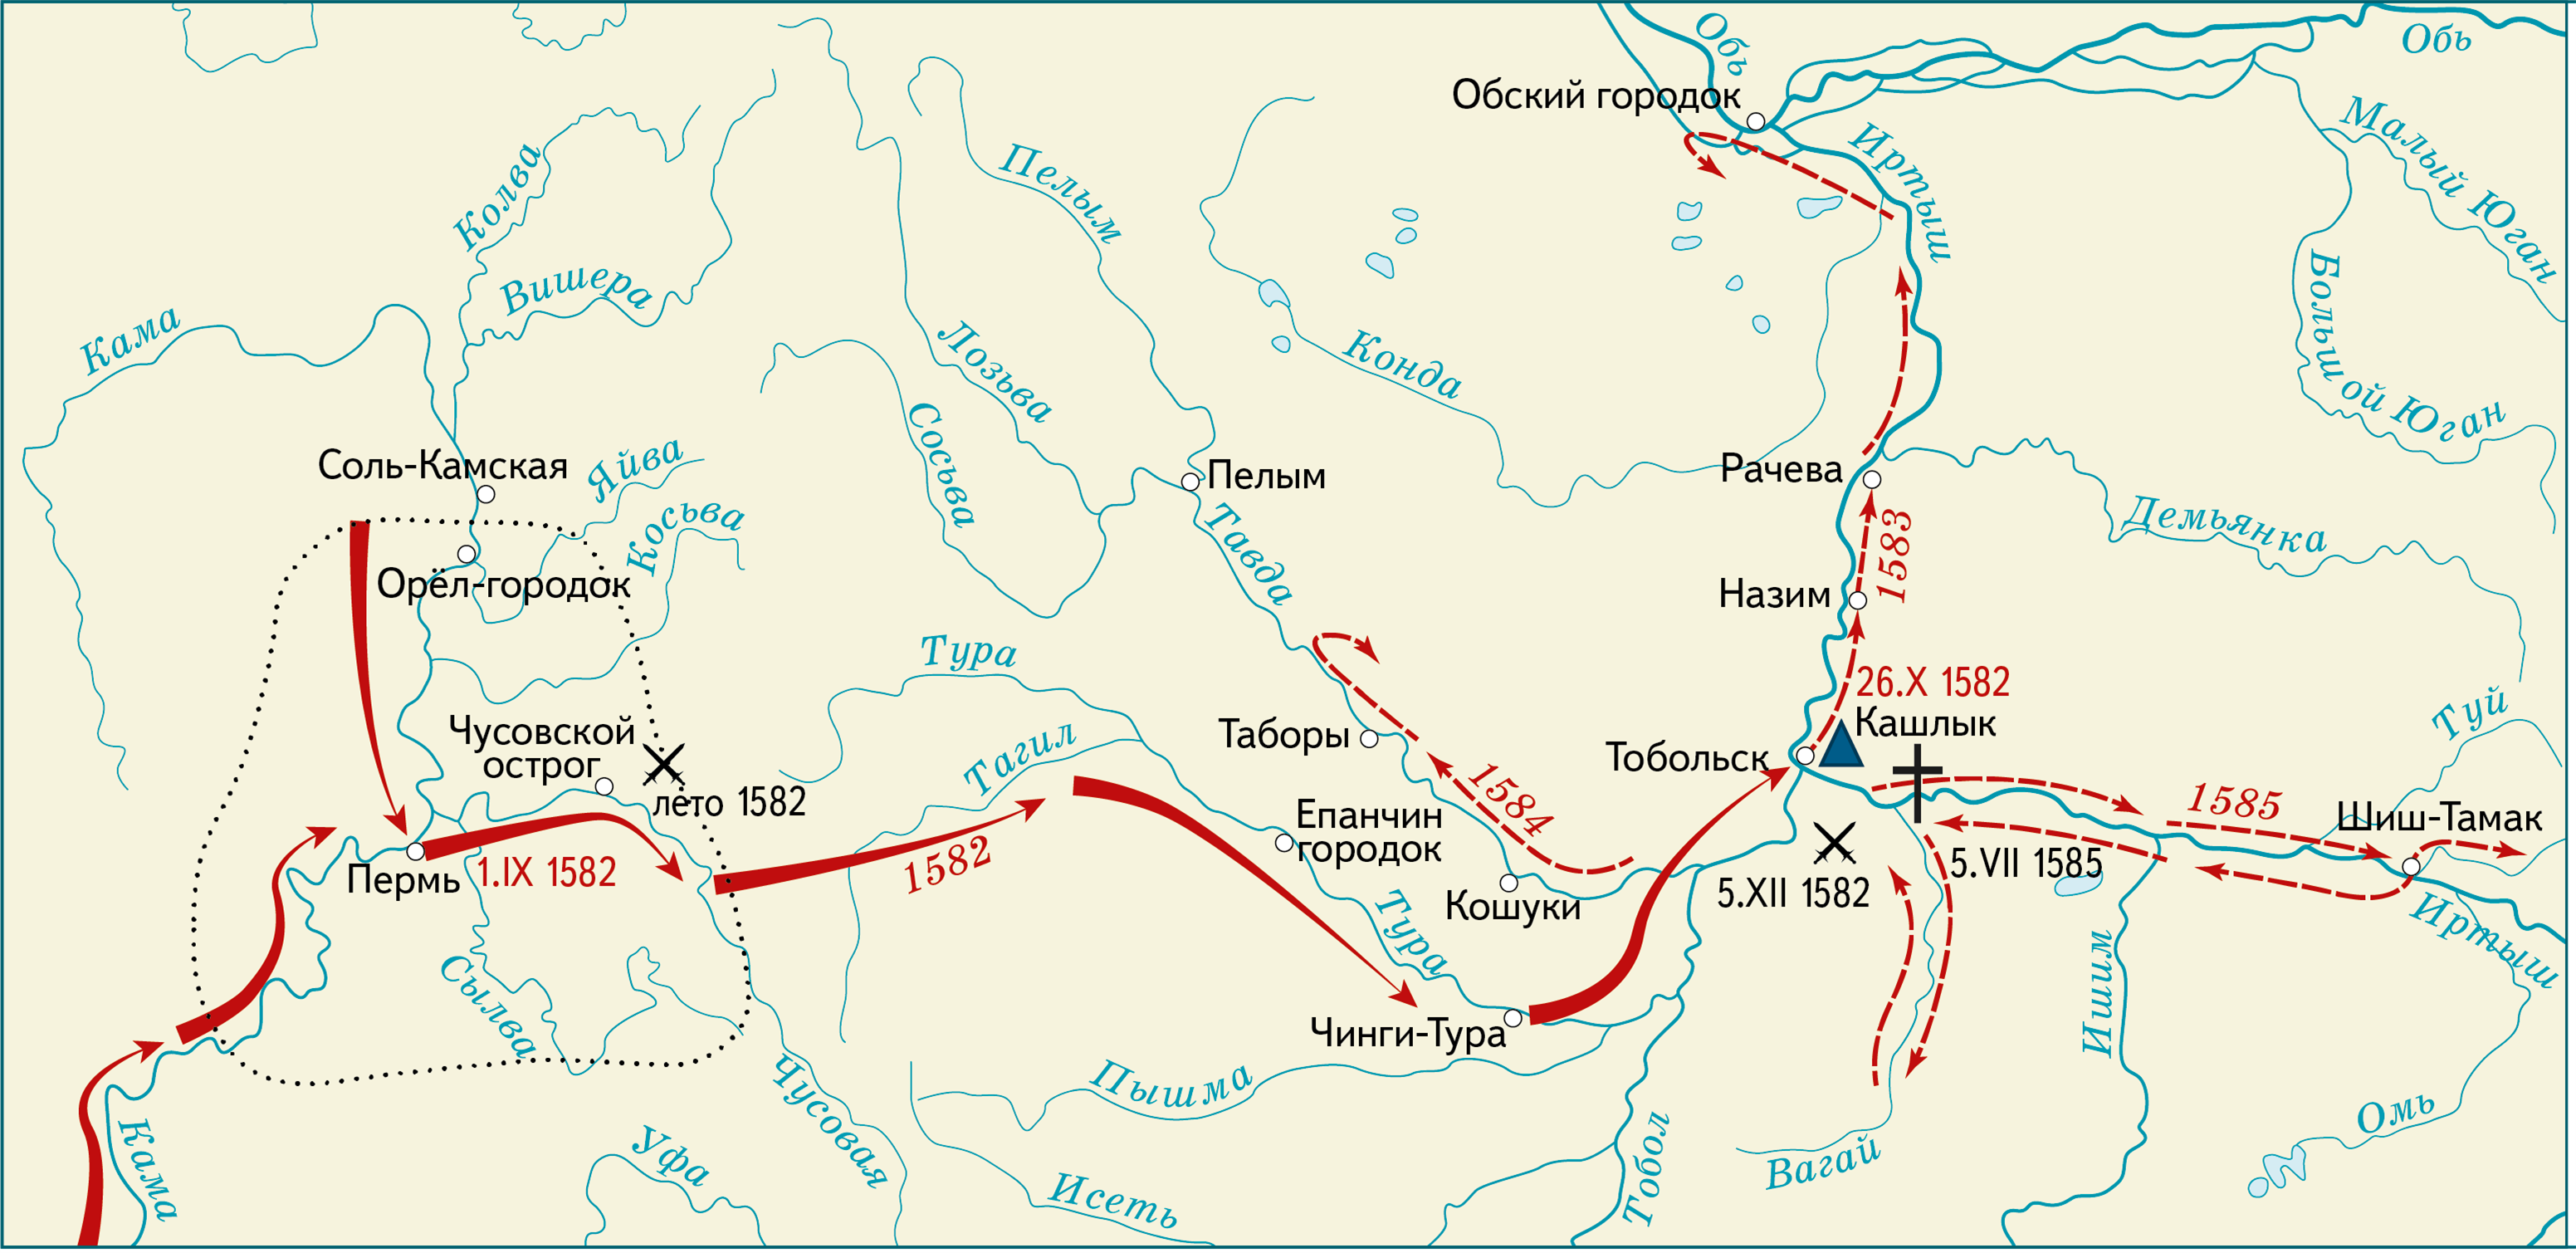 Исследователи южной сибири. Поход Ермака в Сибирь 1581-1585. 1581 Поход Ермака в Сибирь. Карта поход Ермака в Сибирь 1581.